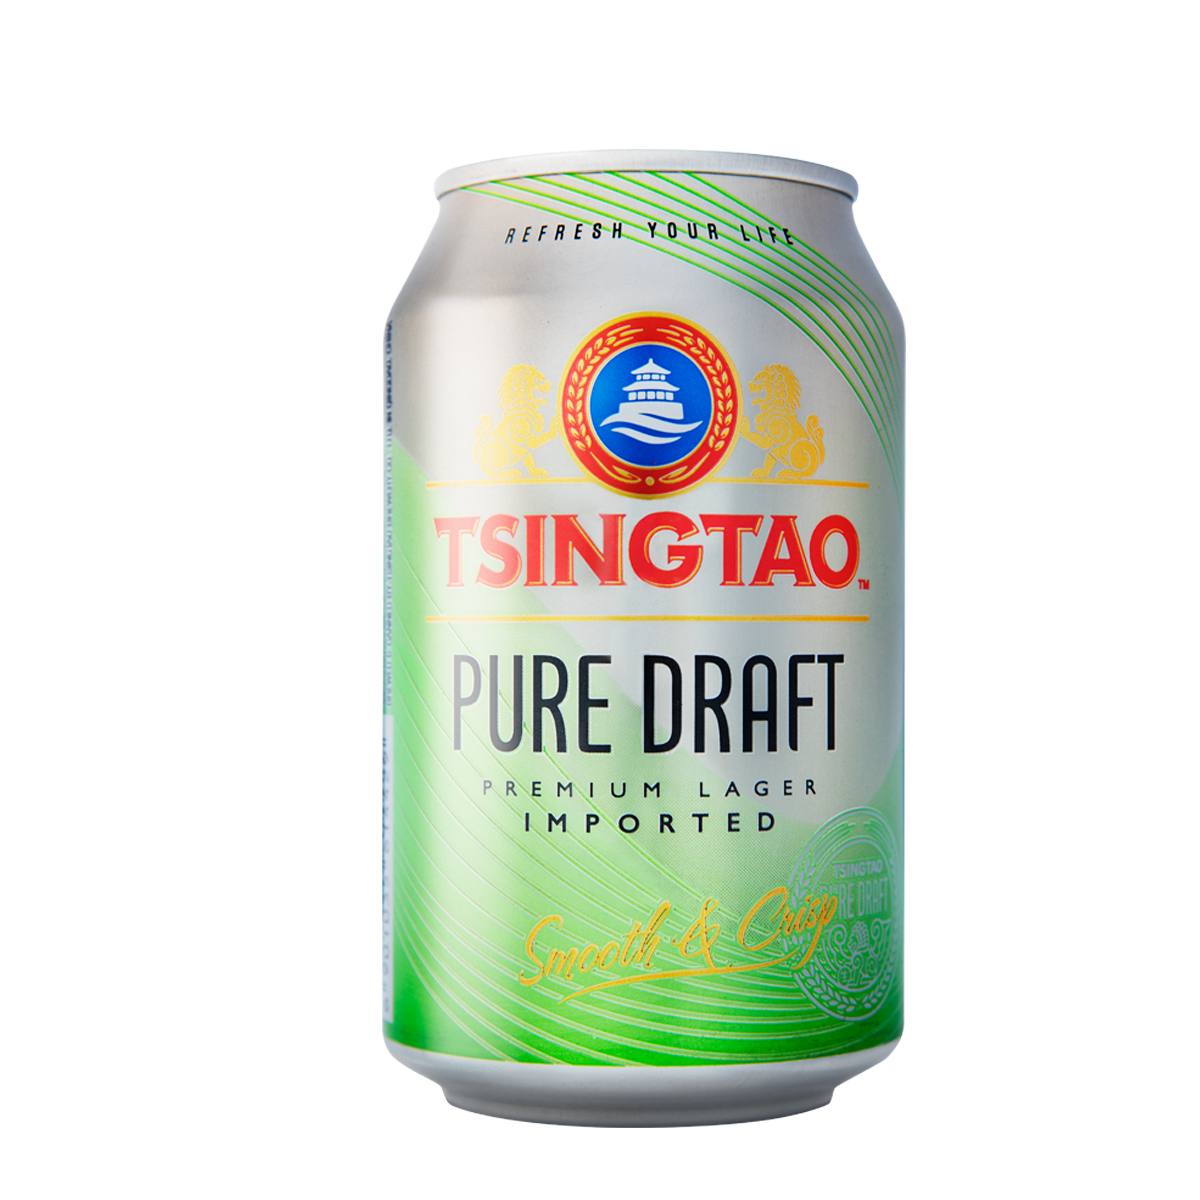 [TẶNG MỒI BÉN] - Thùng 24 lon Bia Tsingtao Pure Draft - Độ cồn 4.3% - Bia Thanh Đảo Nhập...